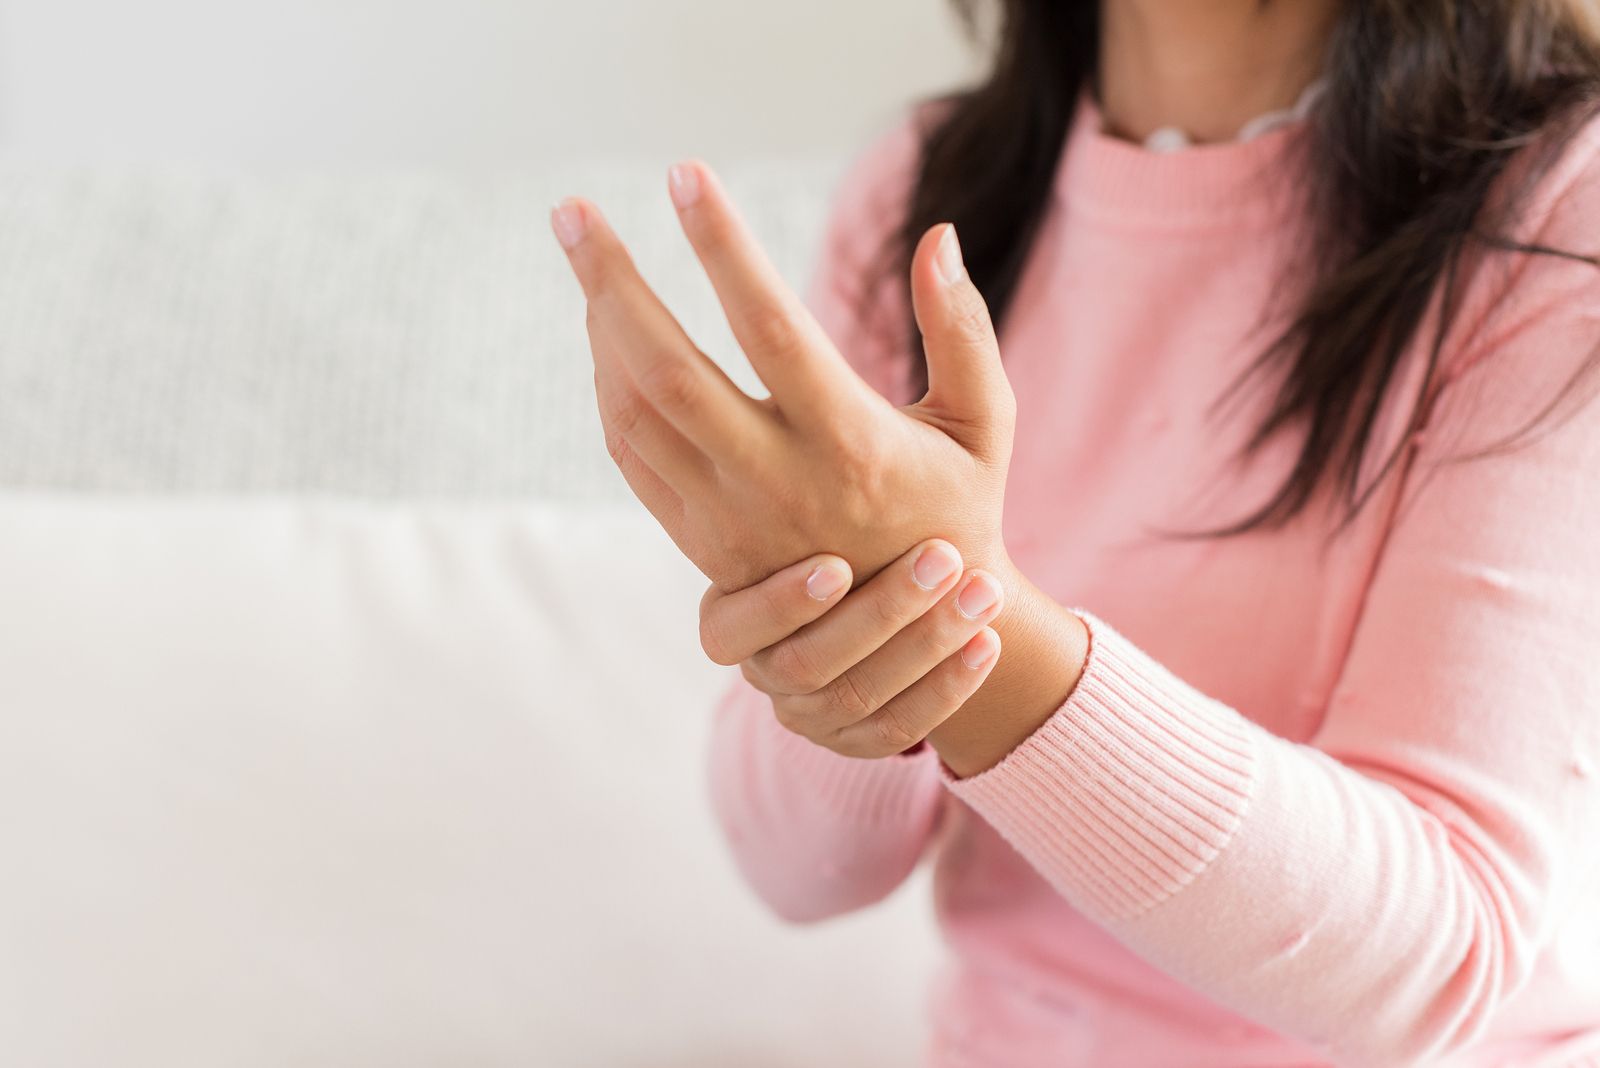 Ejercicios sencillos para aliviar la artrosis de manos en personas mayores